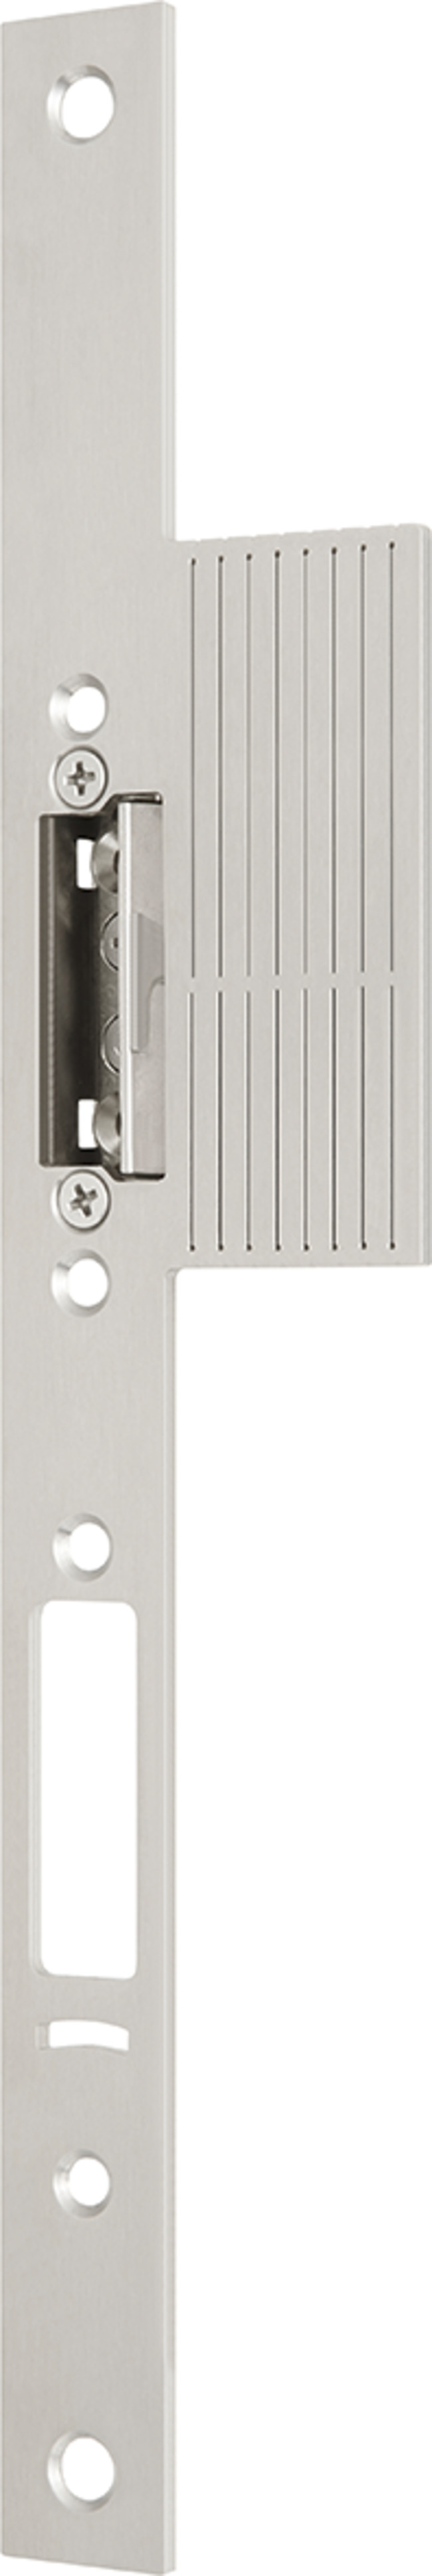 Têtière à talon pour le verrouillage de vantail fixe anti-panique sur des portes à cadre tubulaire 14413-M-STL